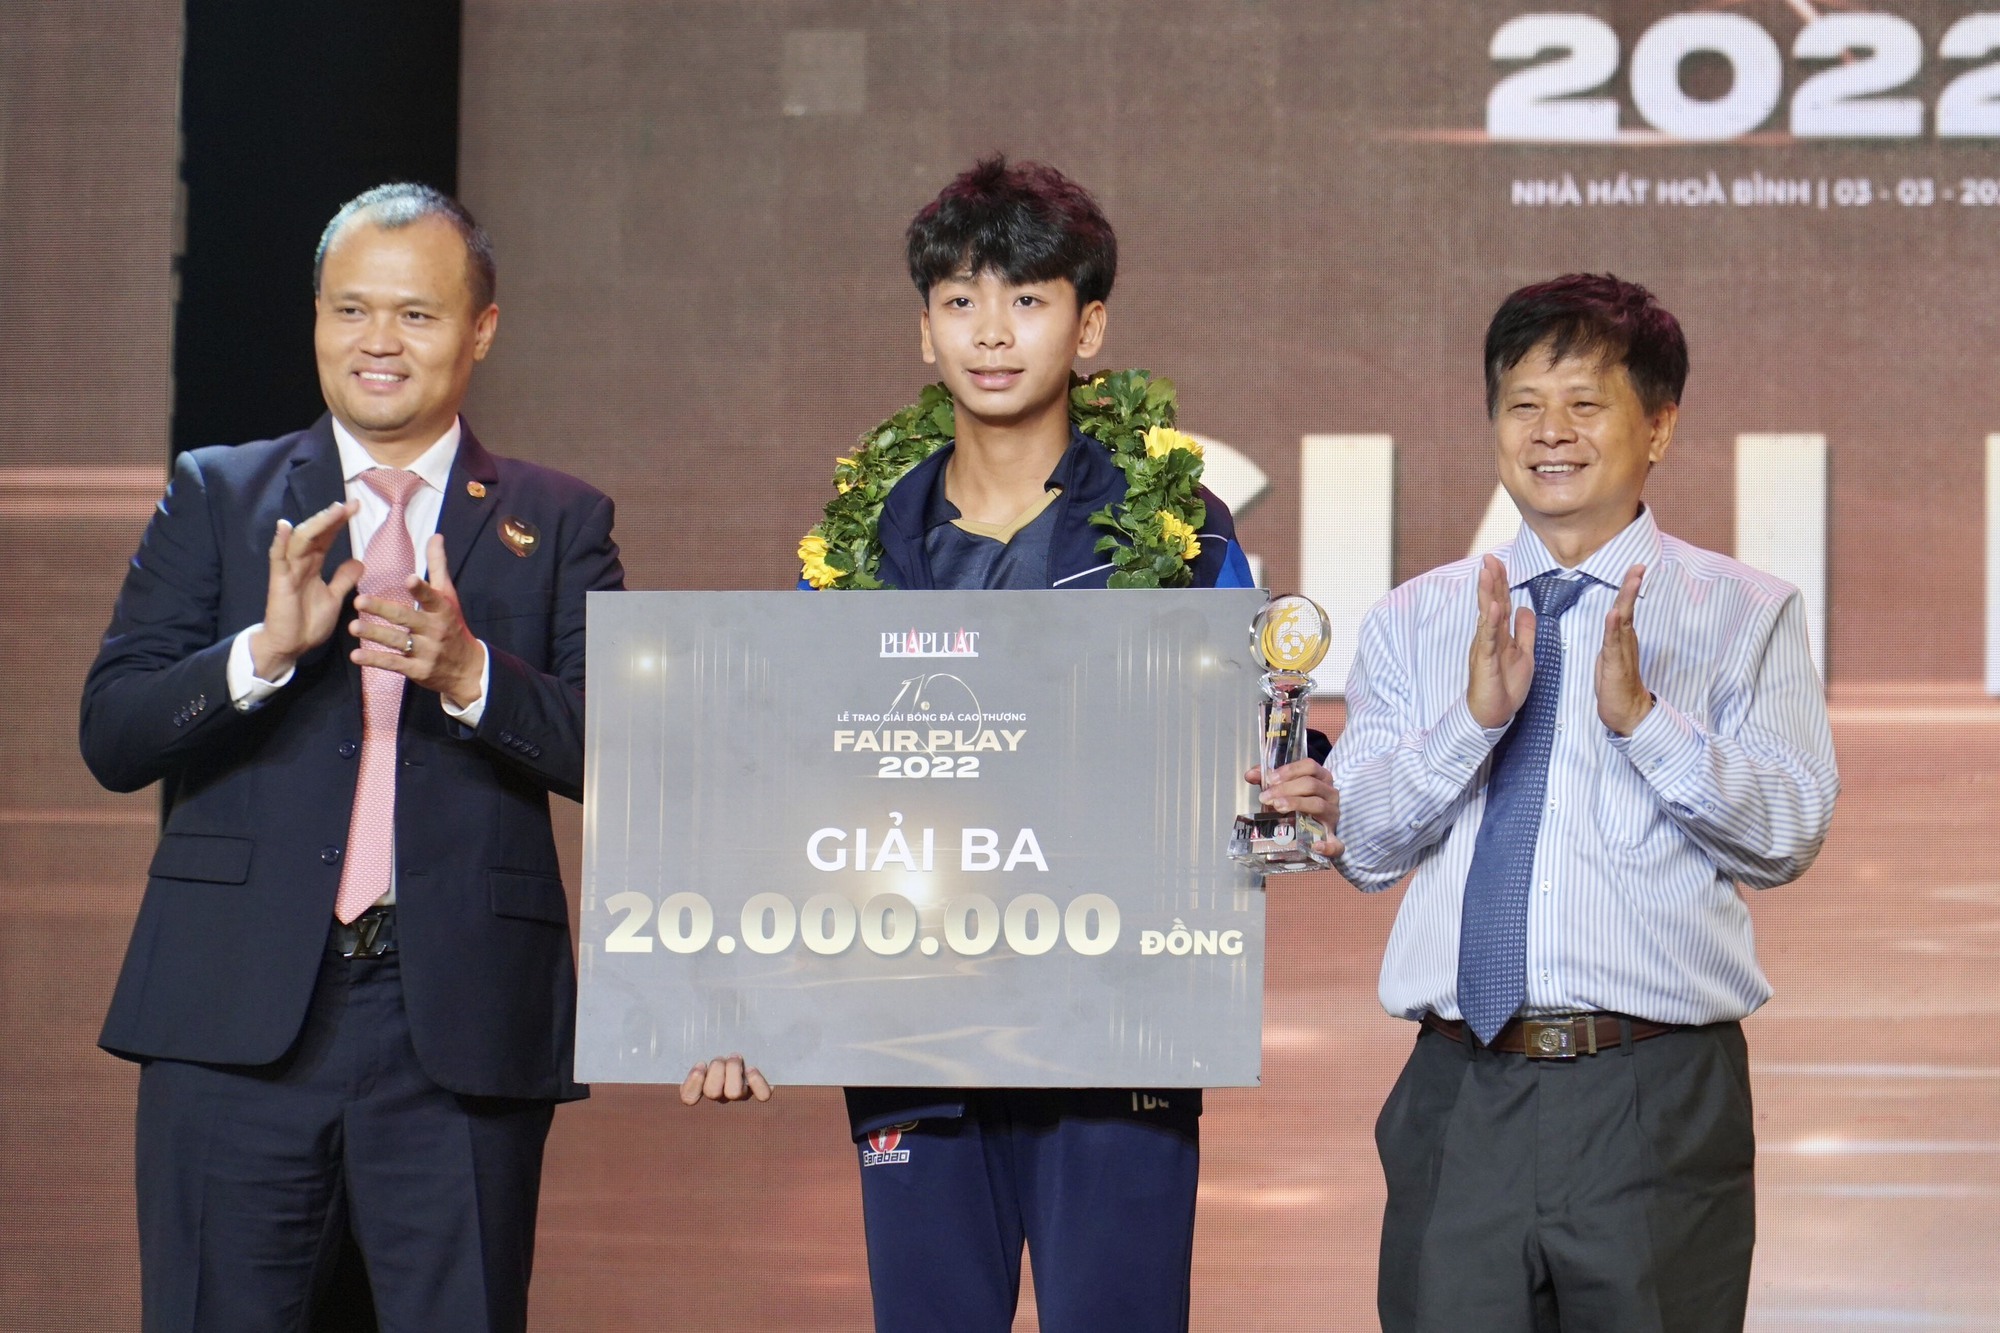 Đội tuyển bóng đá nữ Việt Nam đoạt giải Fair Play 2022 - Ảnh 3.